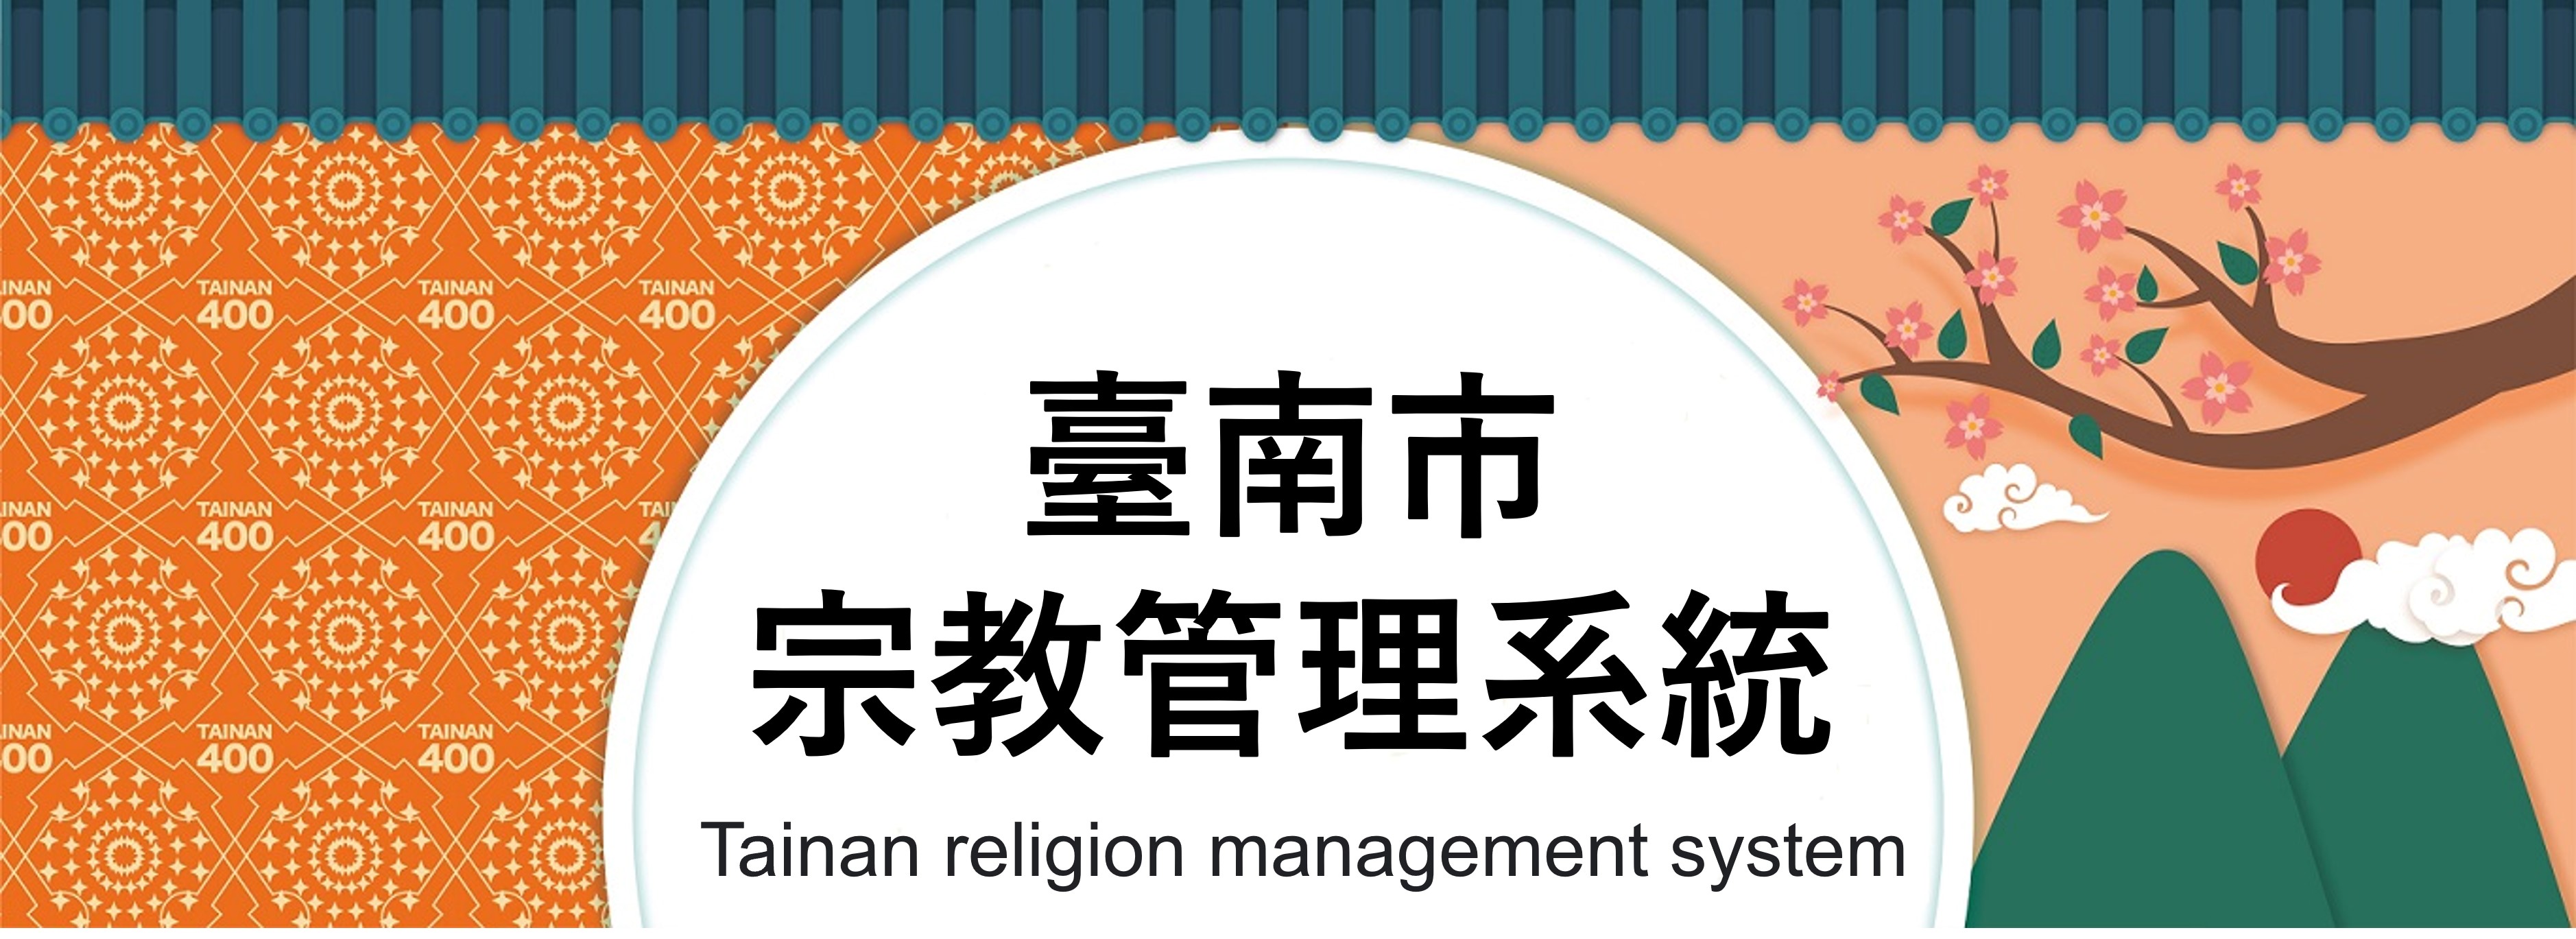 臺南市宗教管理系統